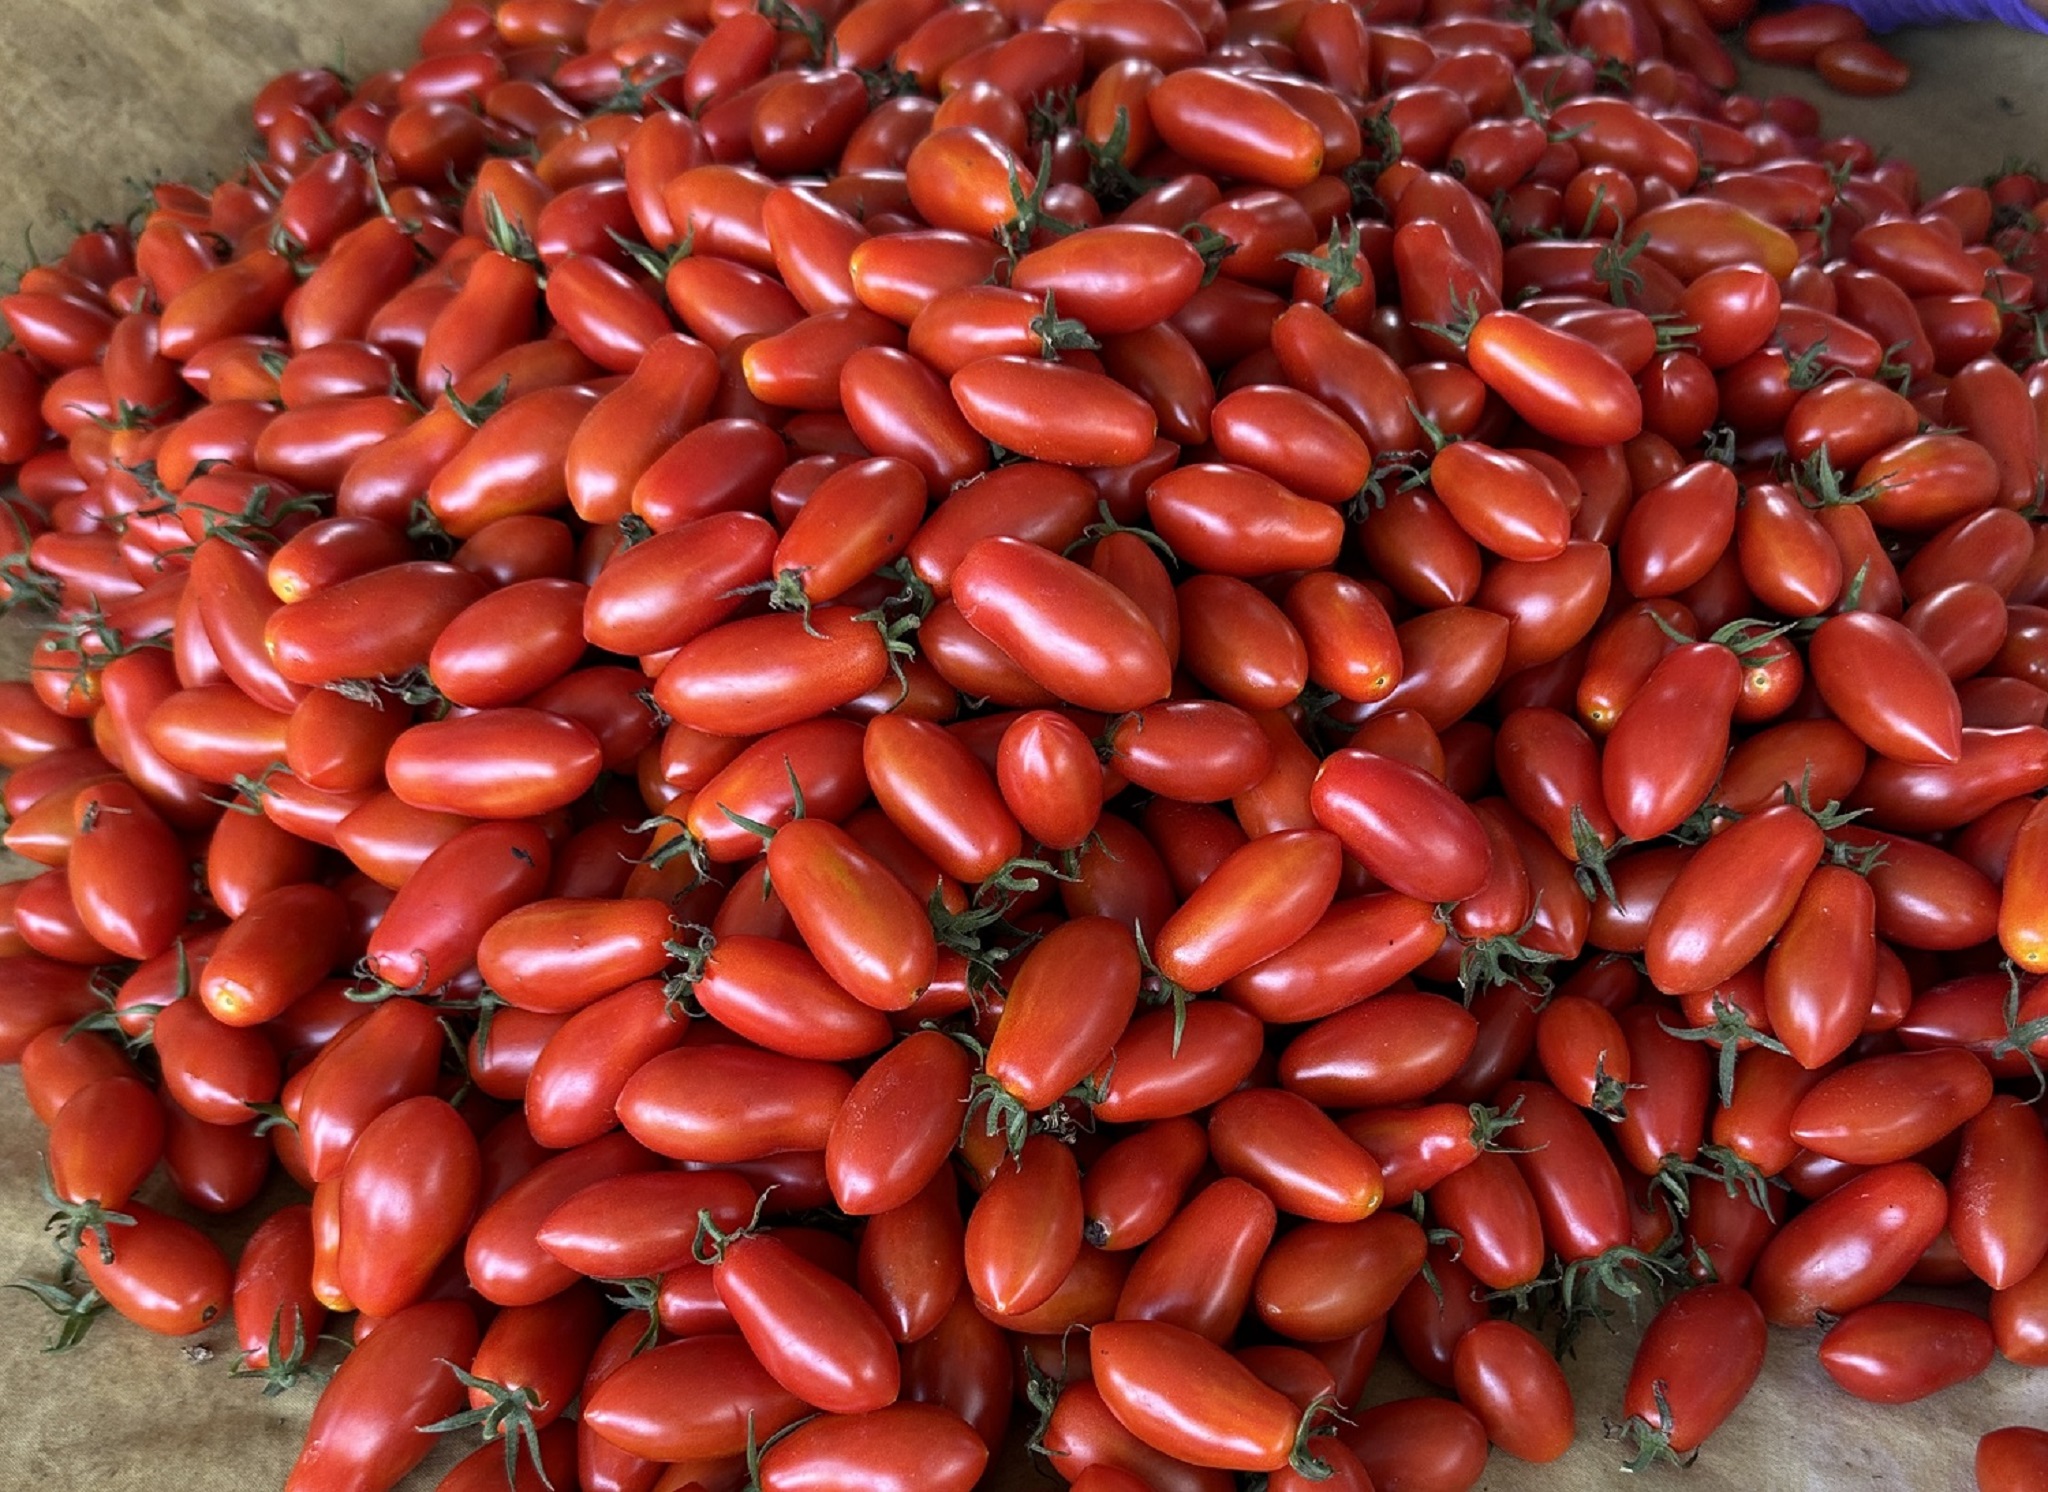 採收期的小番茄鮮嫩欲滴，品質好風味佳，又符合消費者食用安心的期待。